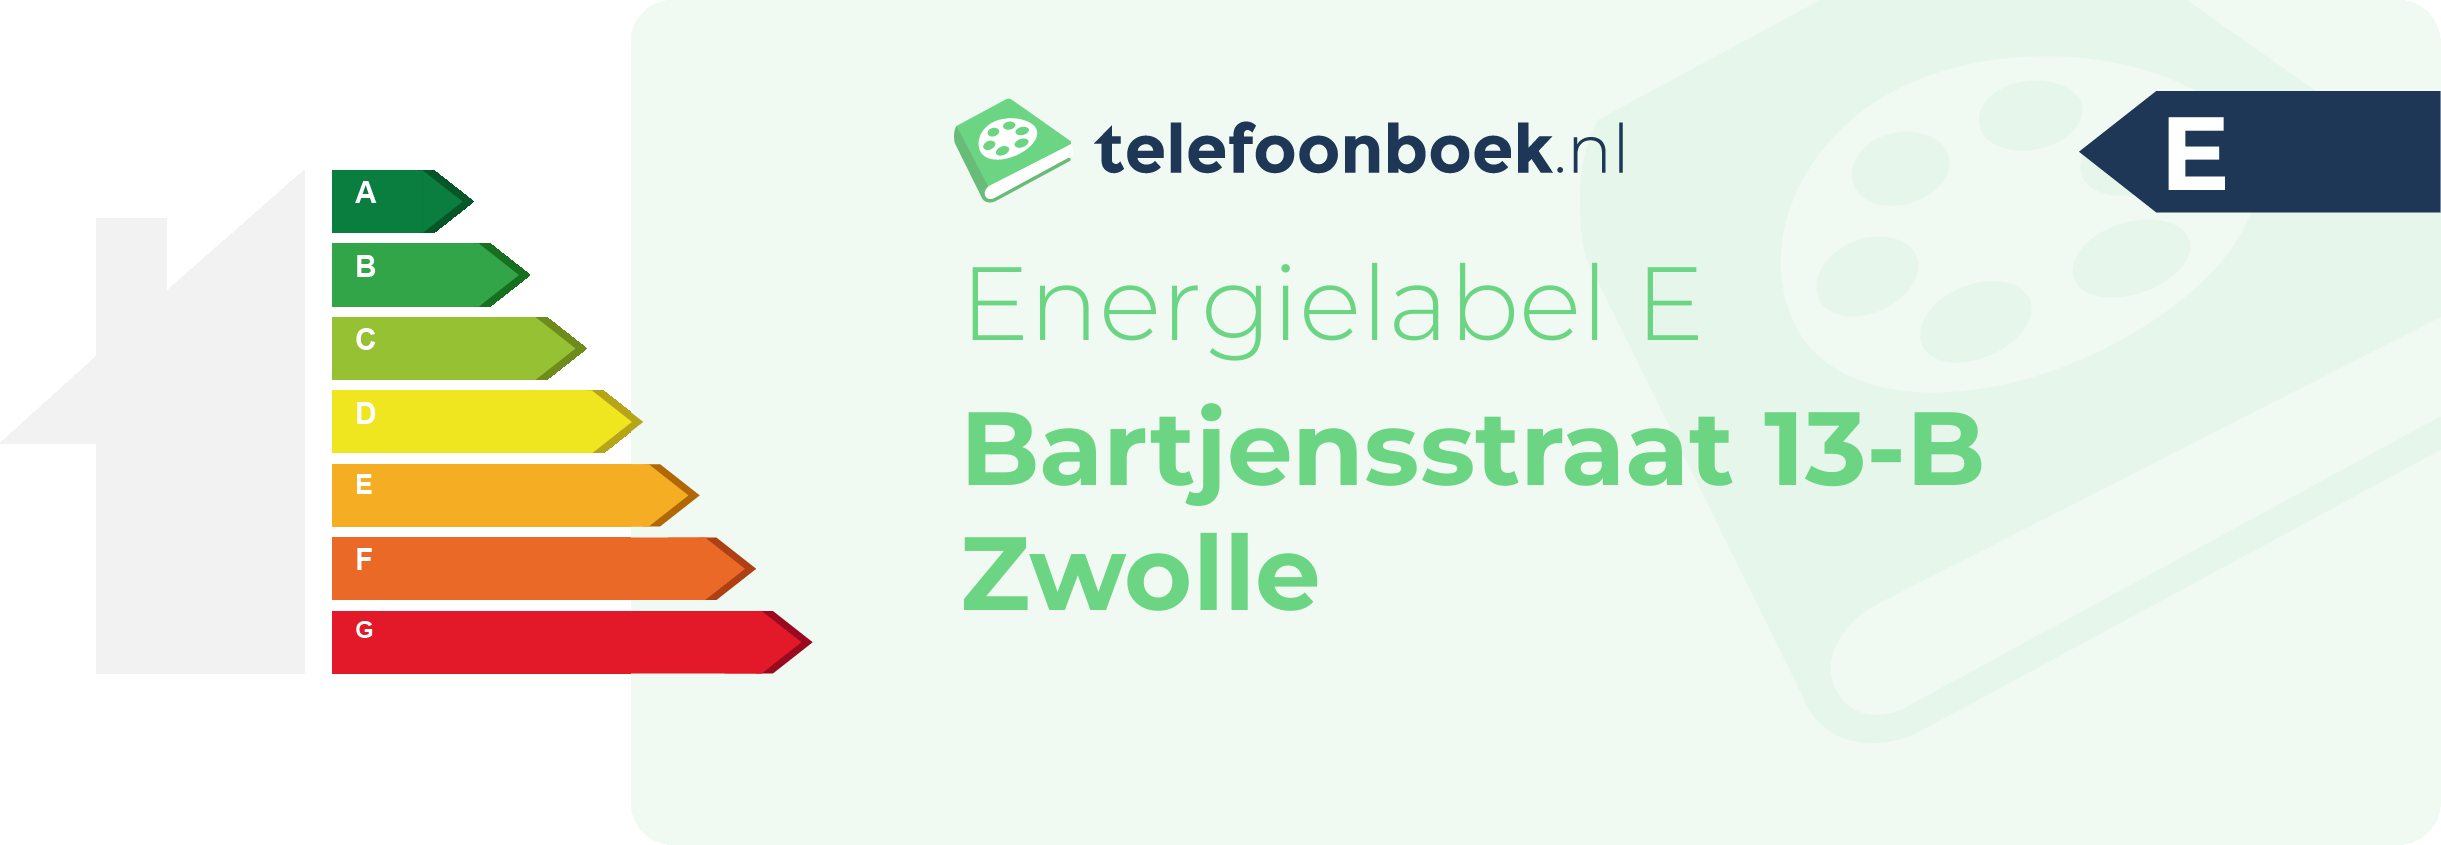 Energielabel Bartjensstraat 13-B Zwolle